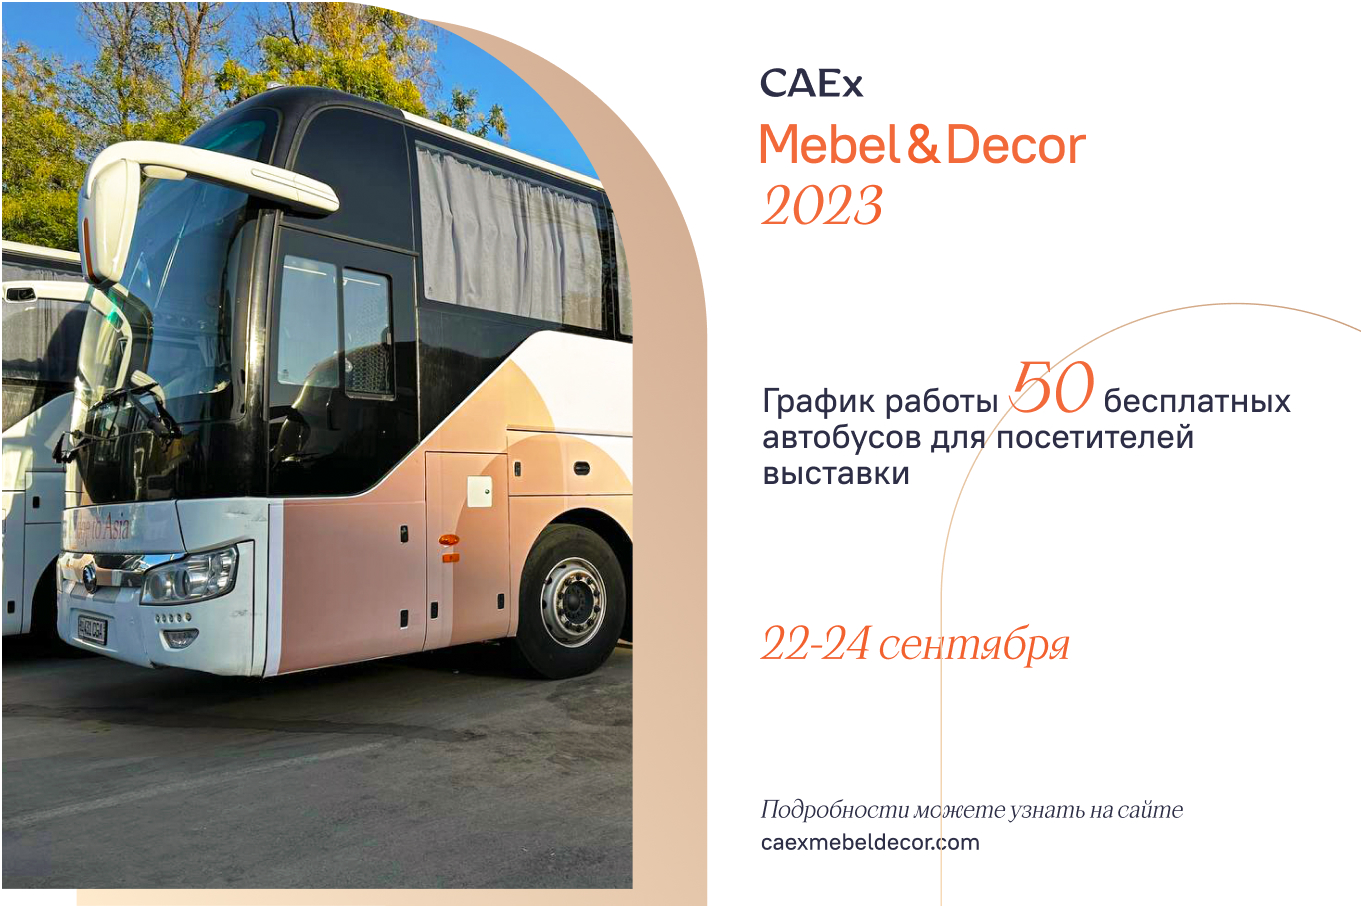 Объявлен график работы 50 бесплатных автобусов для посетителей выставки CAEx Mebel & Décor 2023